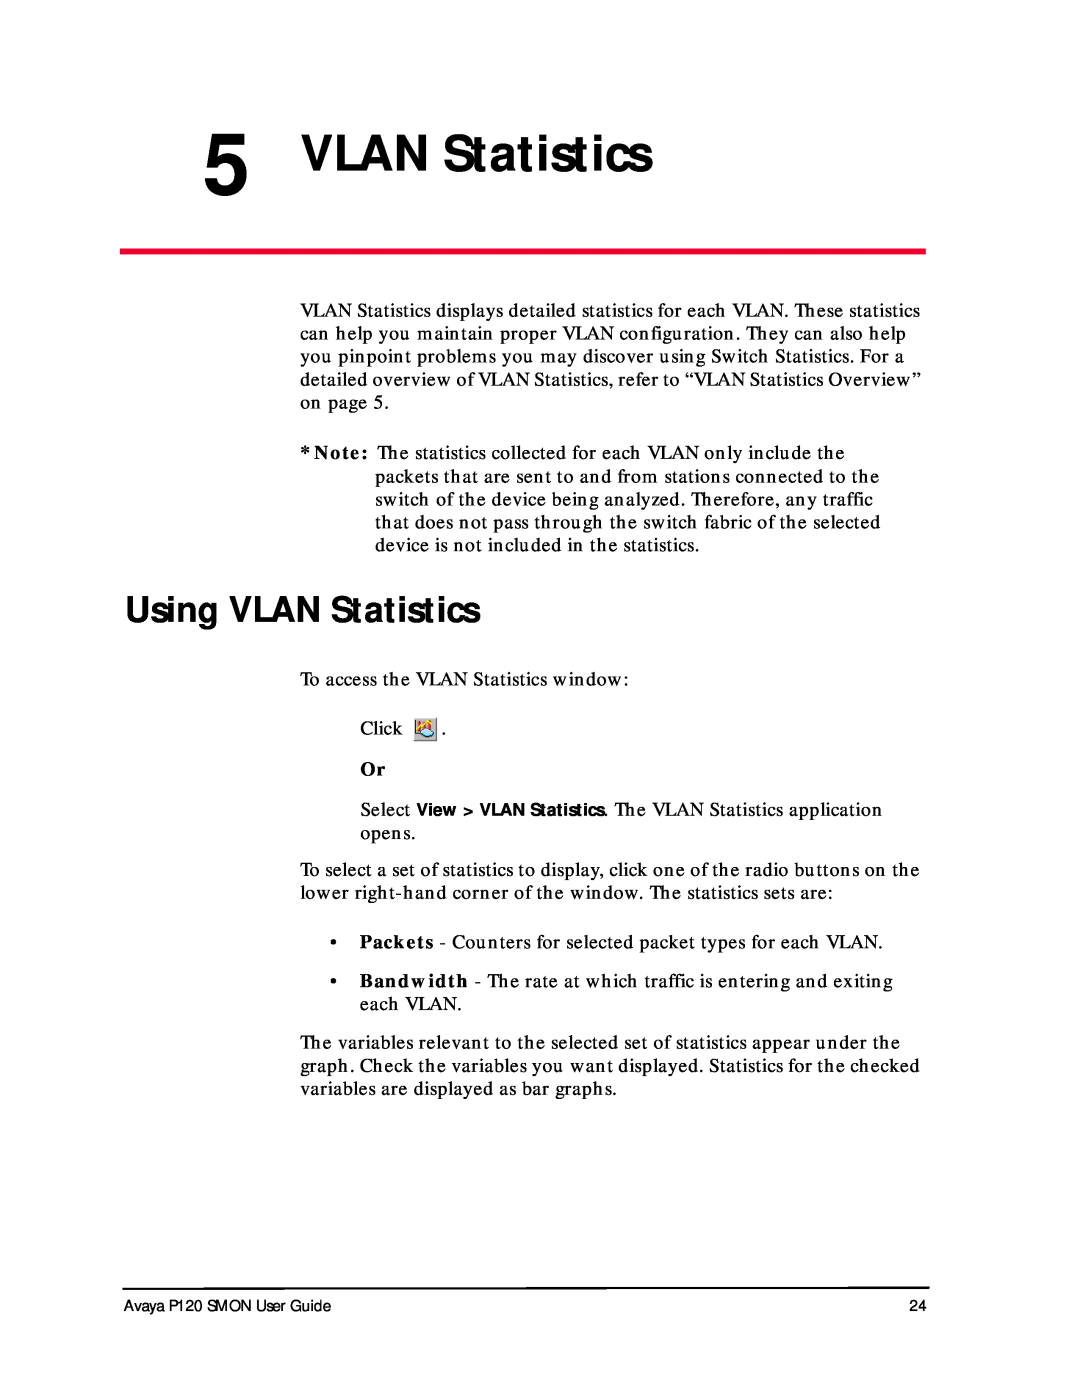 Avaya P120 SMON manual Using VLAN Statistics 